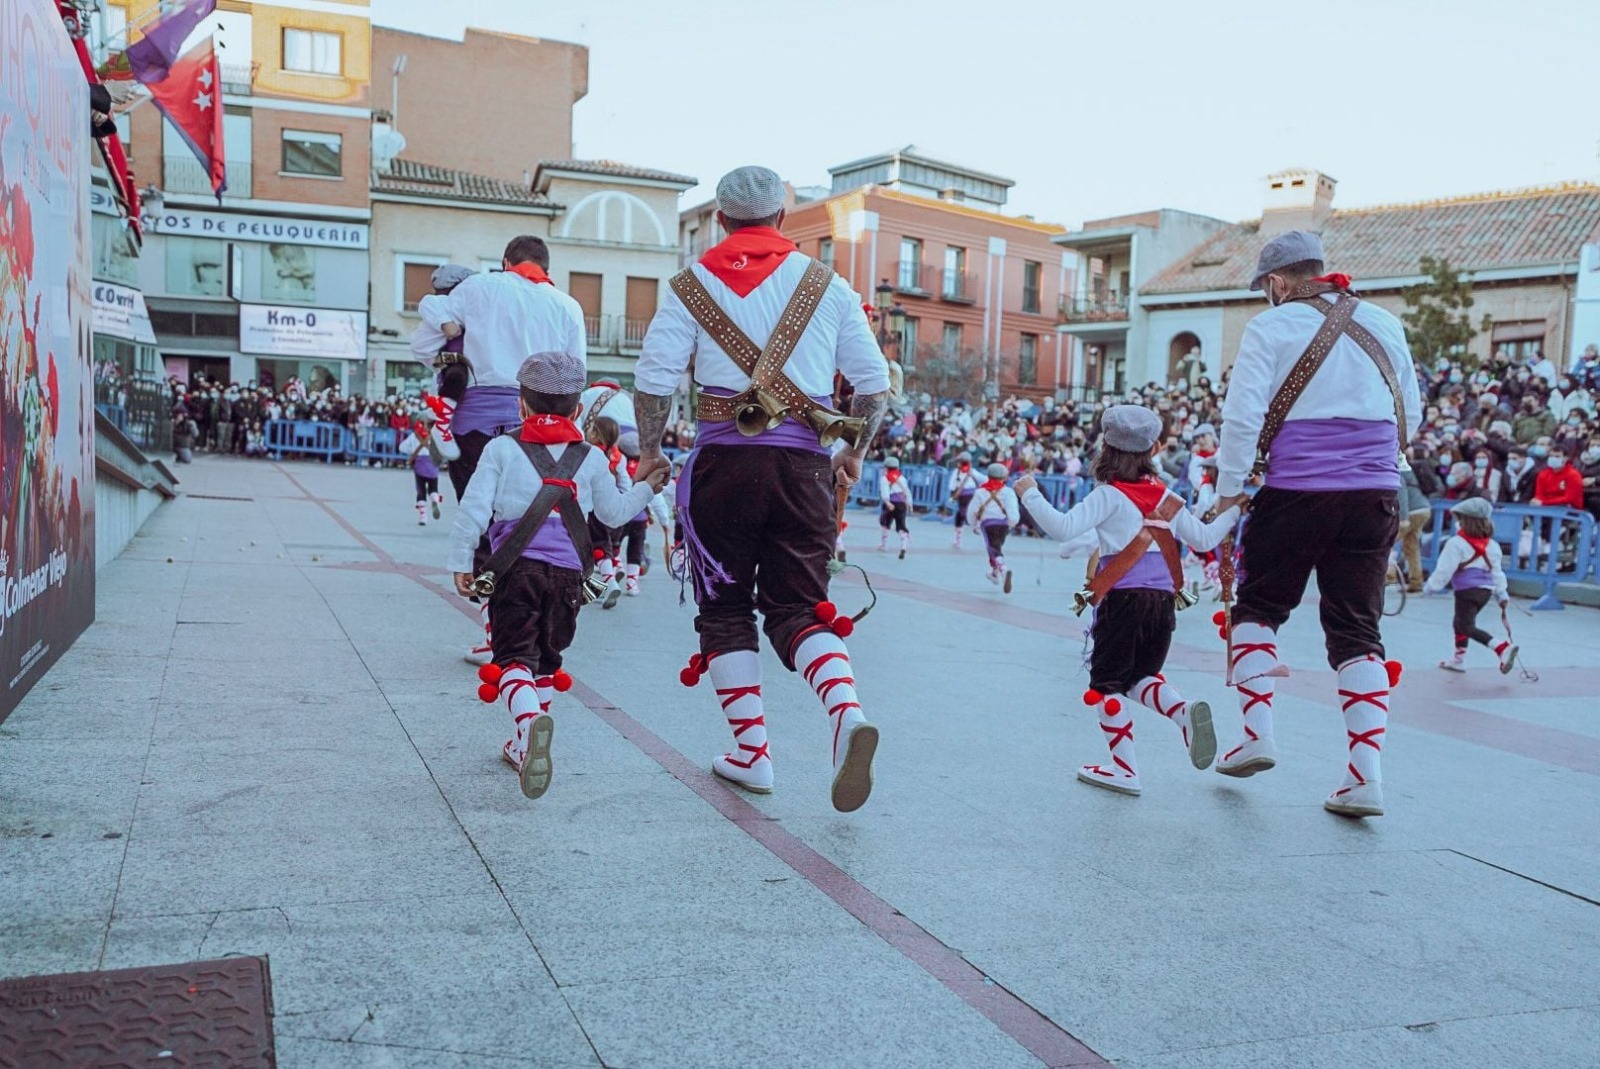  Colmenar Viejo celebra su fiesta de La Vaquilla, declarada Fiesta de Interés Turístico Nacional el sabado 27 de enero